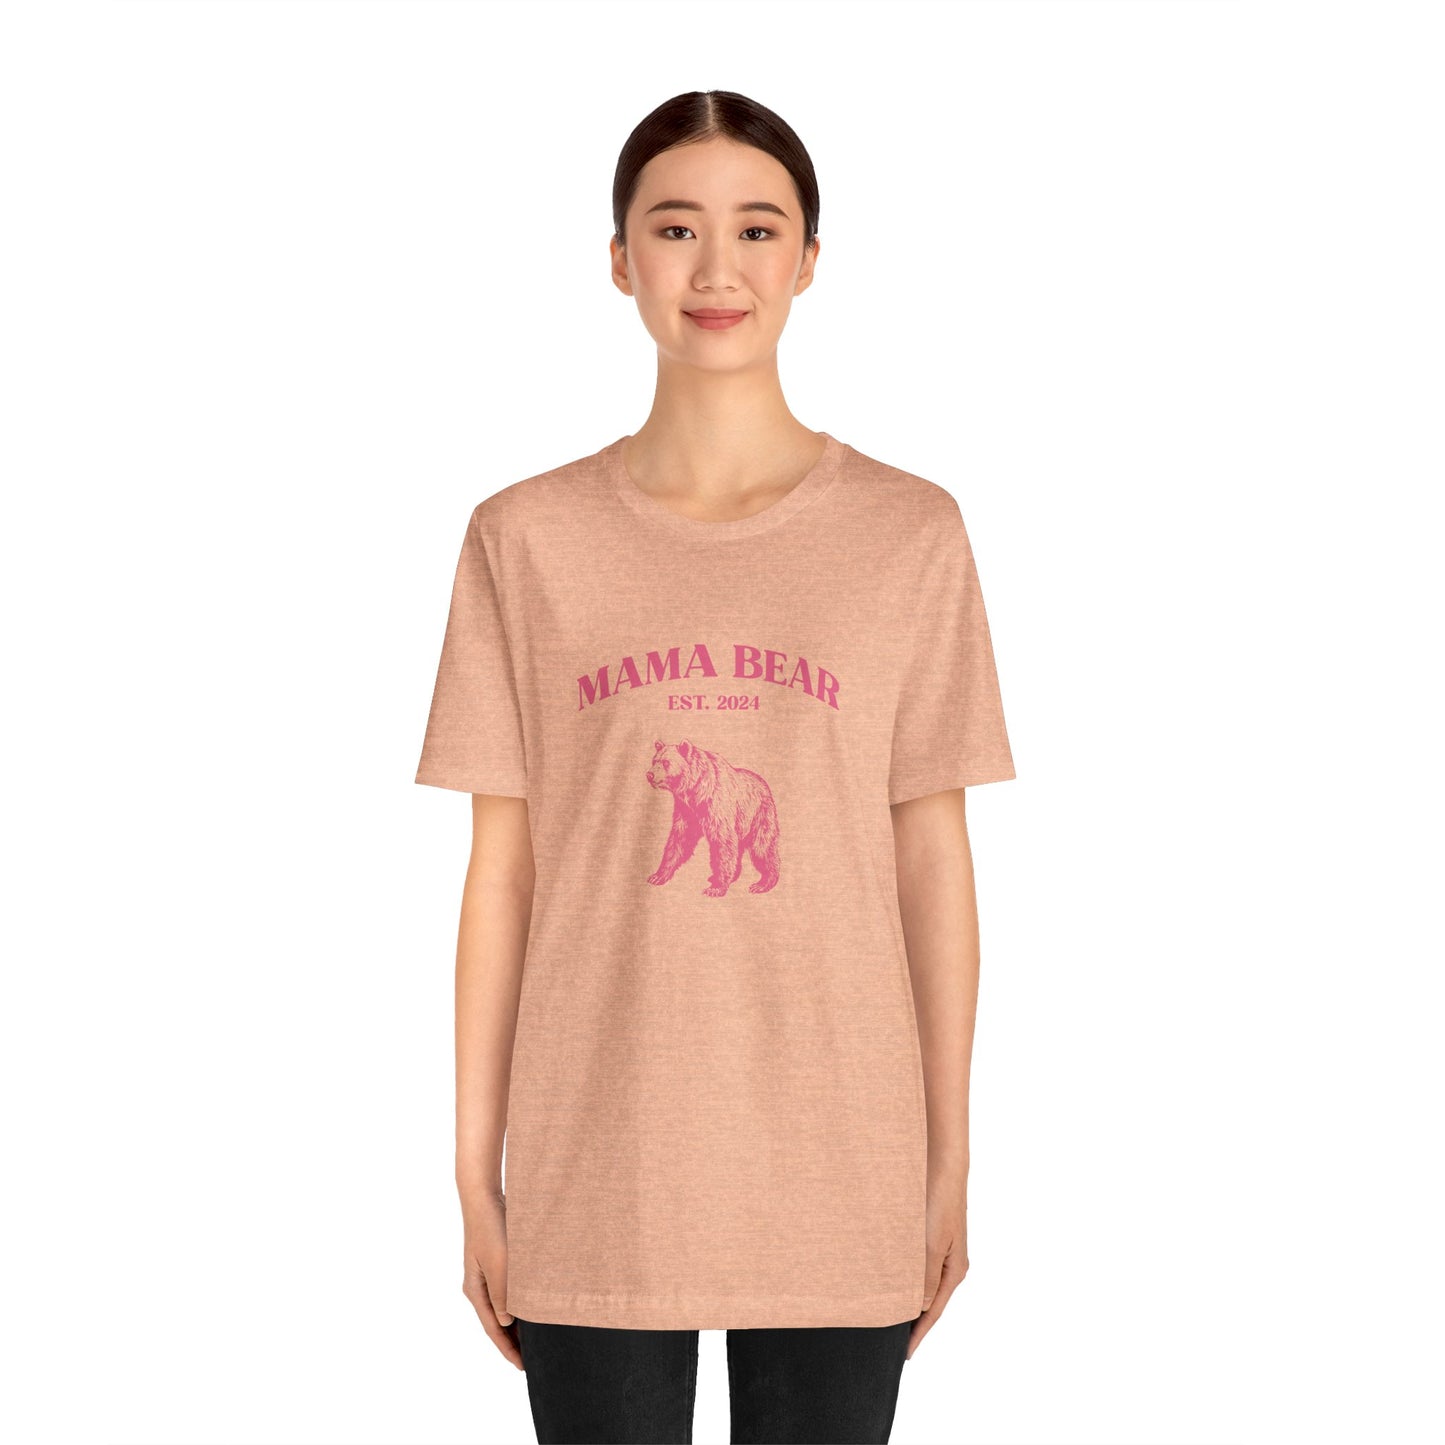 Mama Bear Shirt, Mother's Day Shirt, New Mom Shirt, Best Mama Shirt, Pregnancy Announcement Shirt Gift Shirt for Mama, Pregnant Shirt, T1576